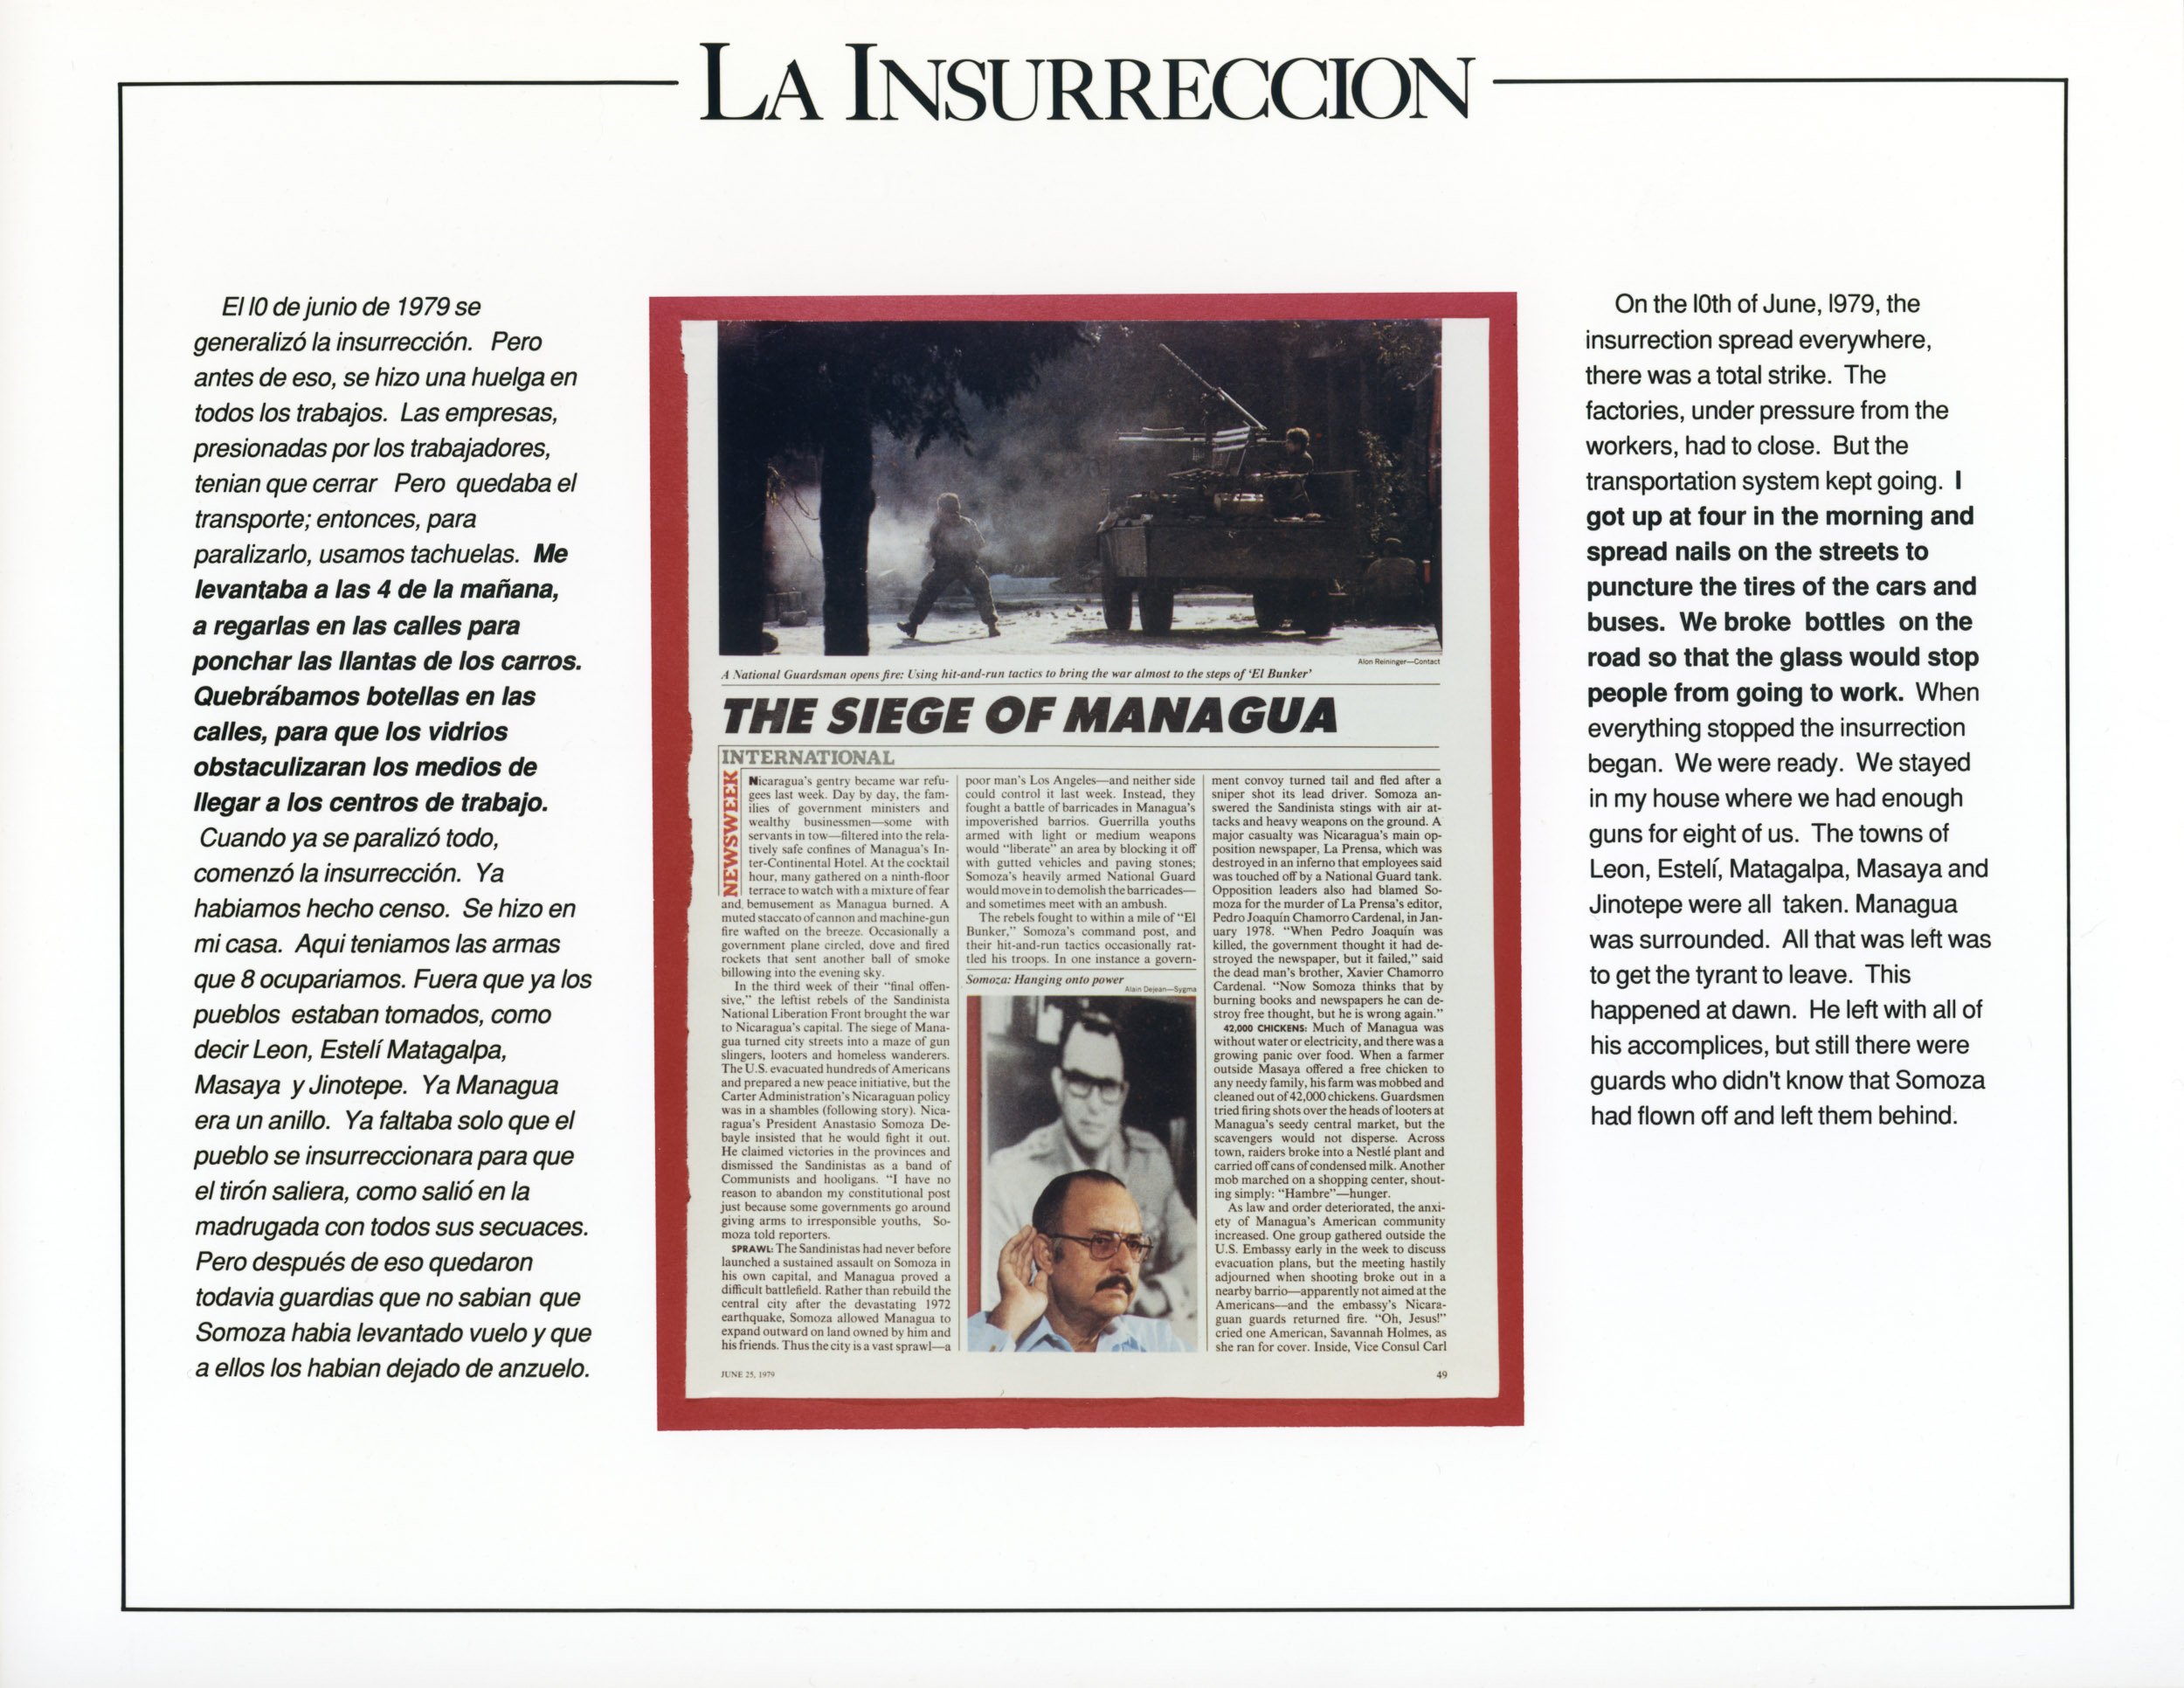 News of the Insurrection_Noticia de la Insurreccion.jpg